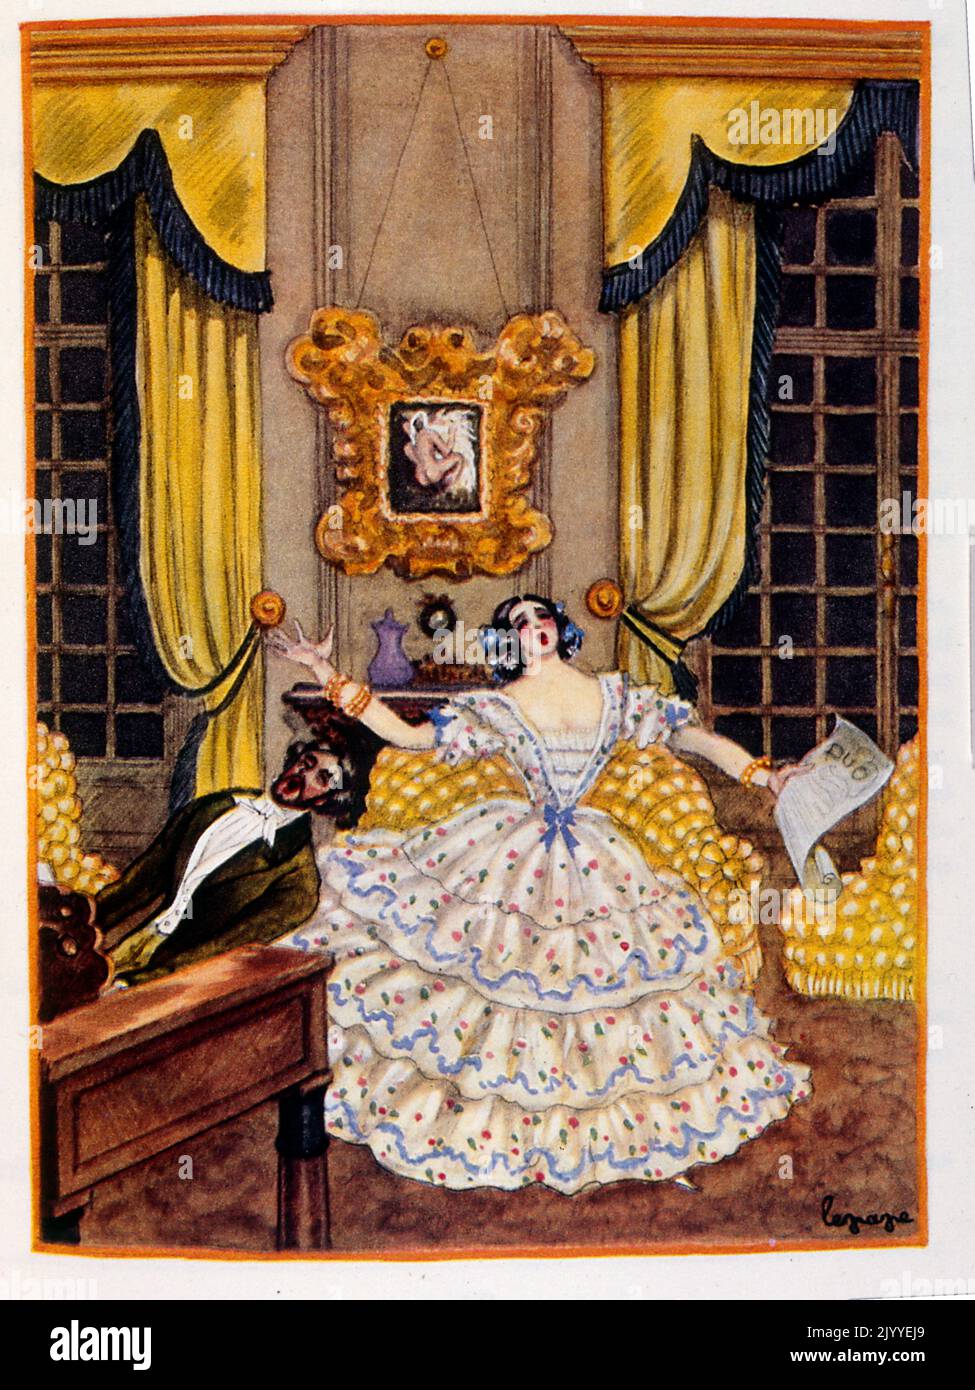 Farbige Illustration, die eine innere häusliche Szene zeigt, in der eine Enkelin und ein Mann in ihrem Wohnzimmer singen und Klavier spielen. Stockfoto